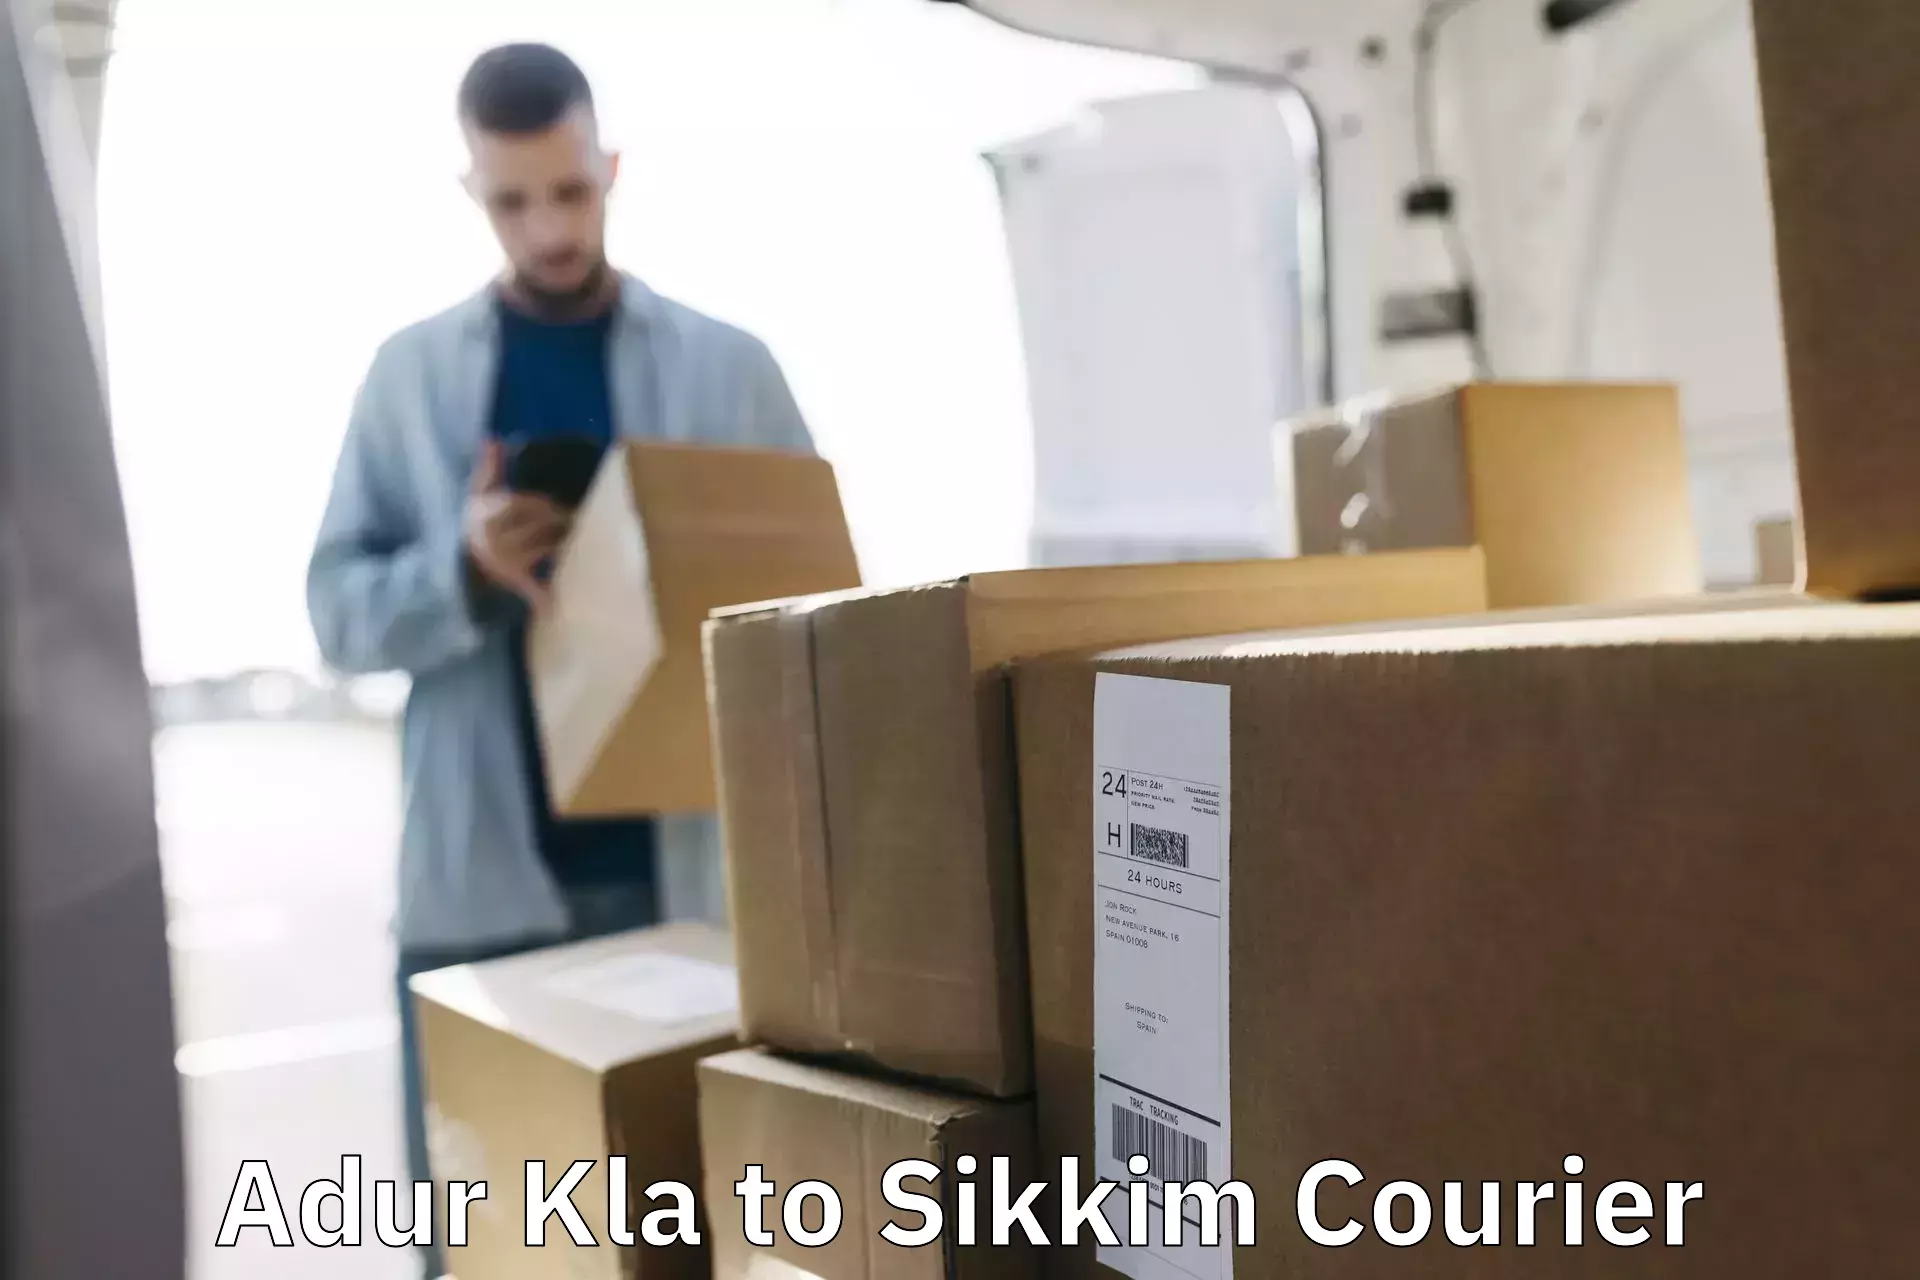 Express logistics service Adur Kla to Sikkim